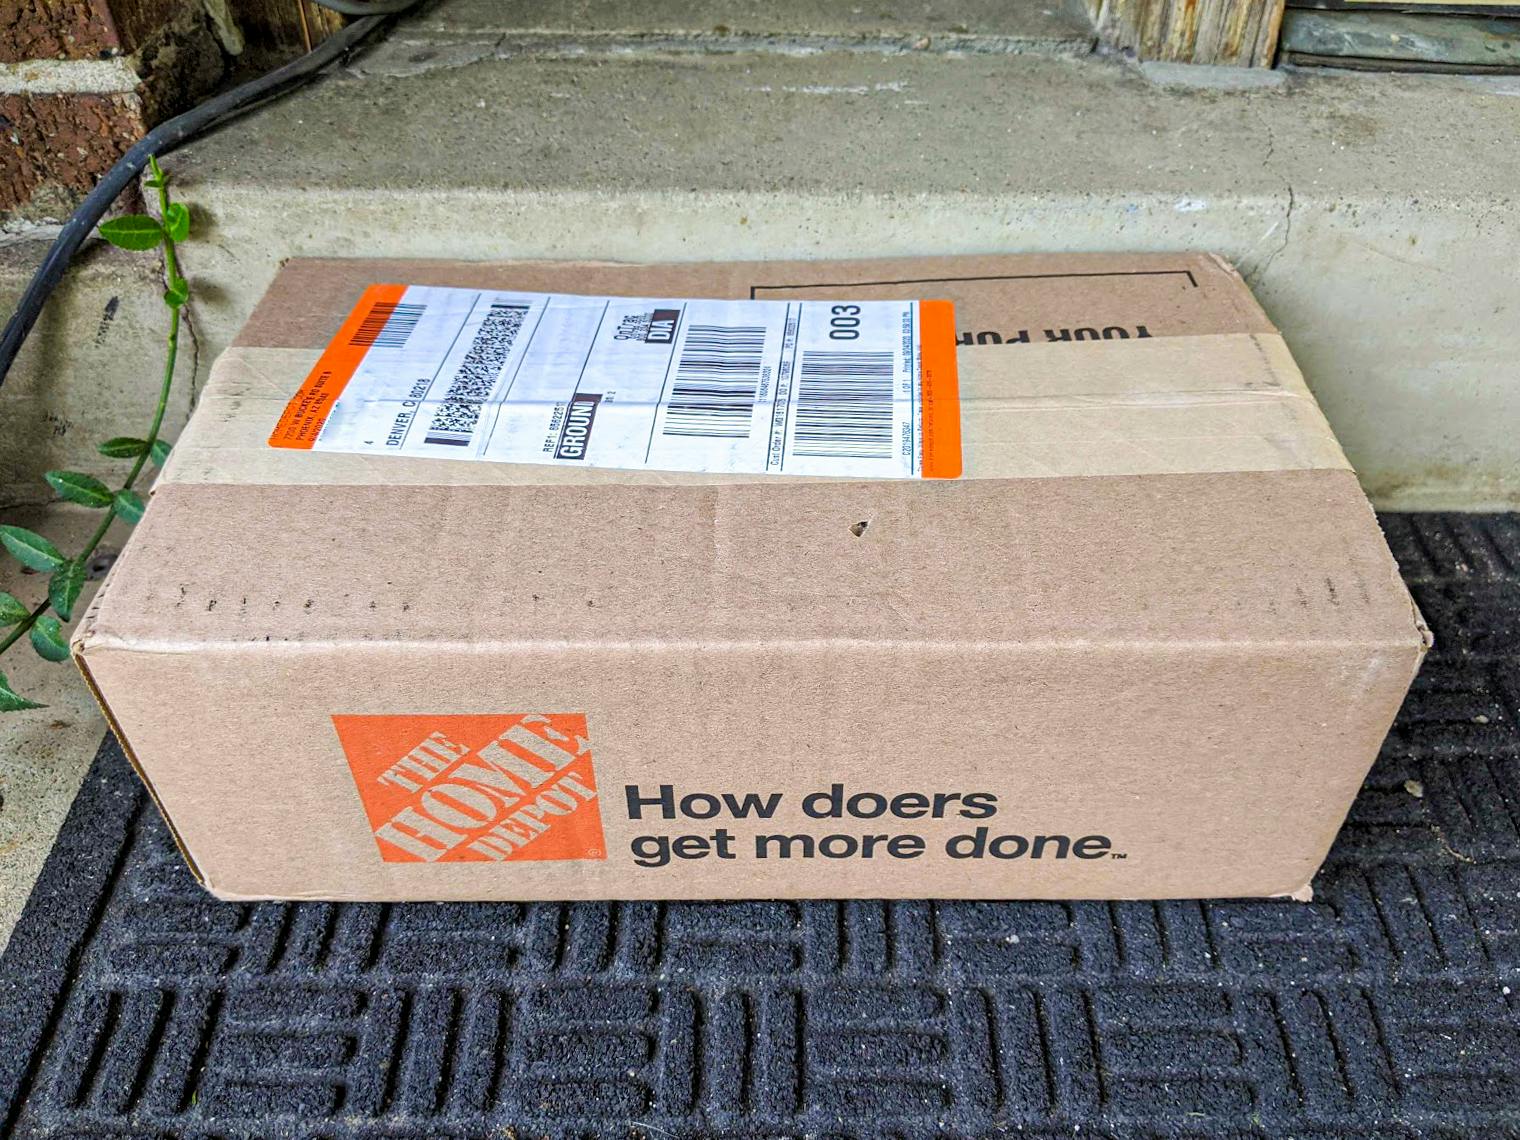 Home Depot box on a doorstep